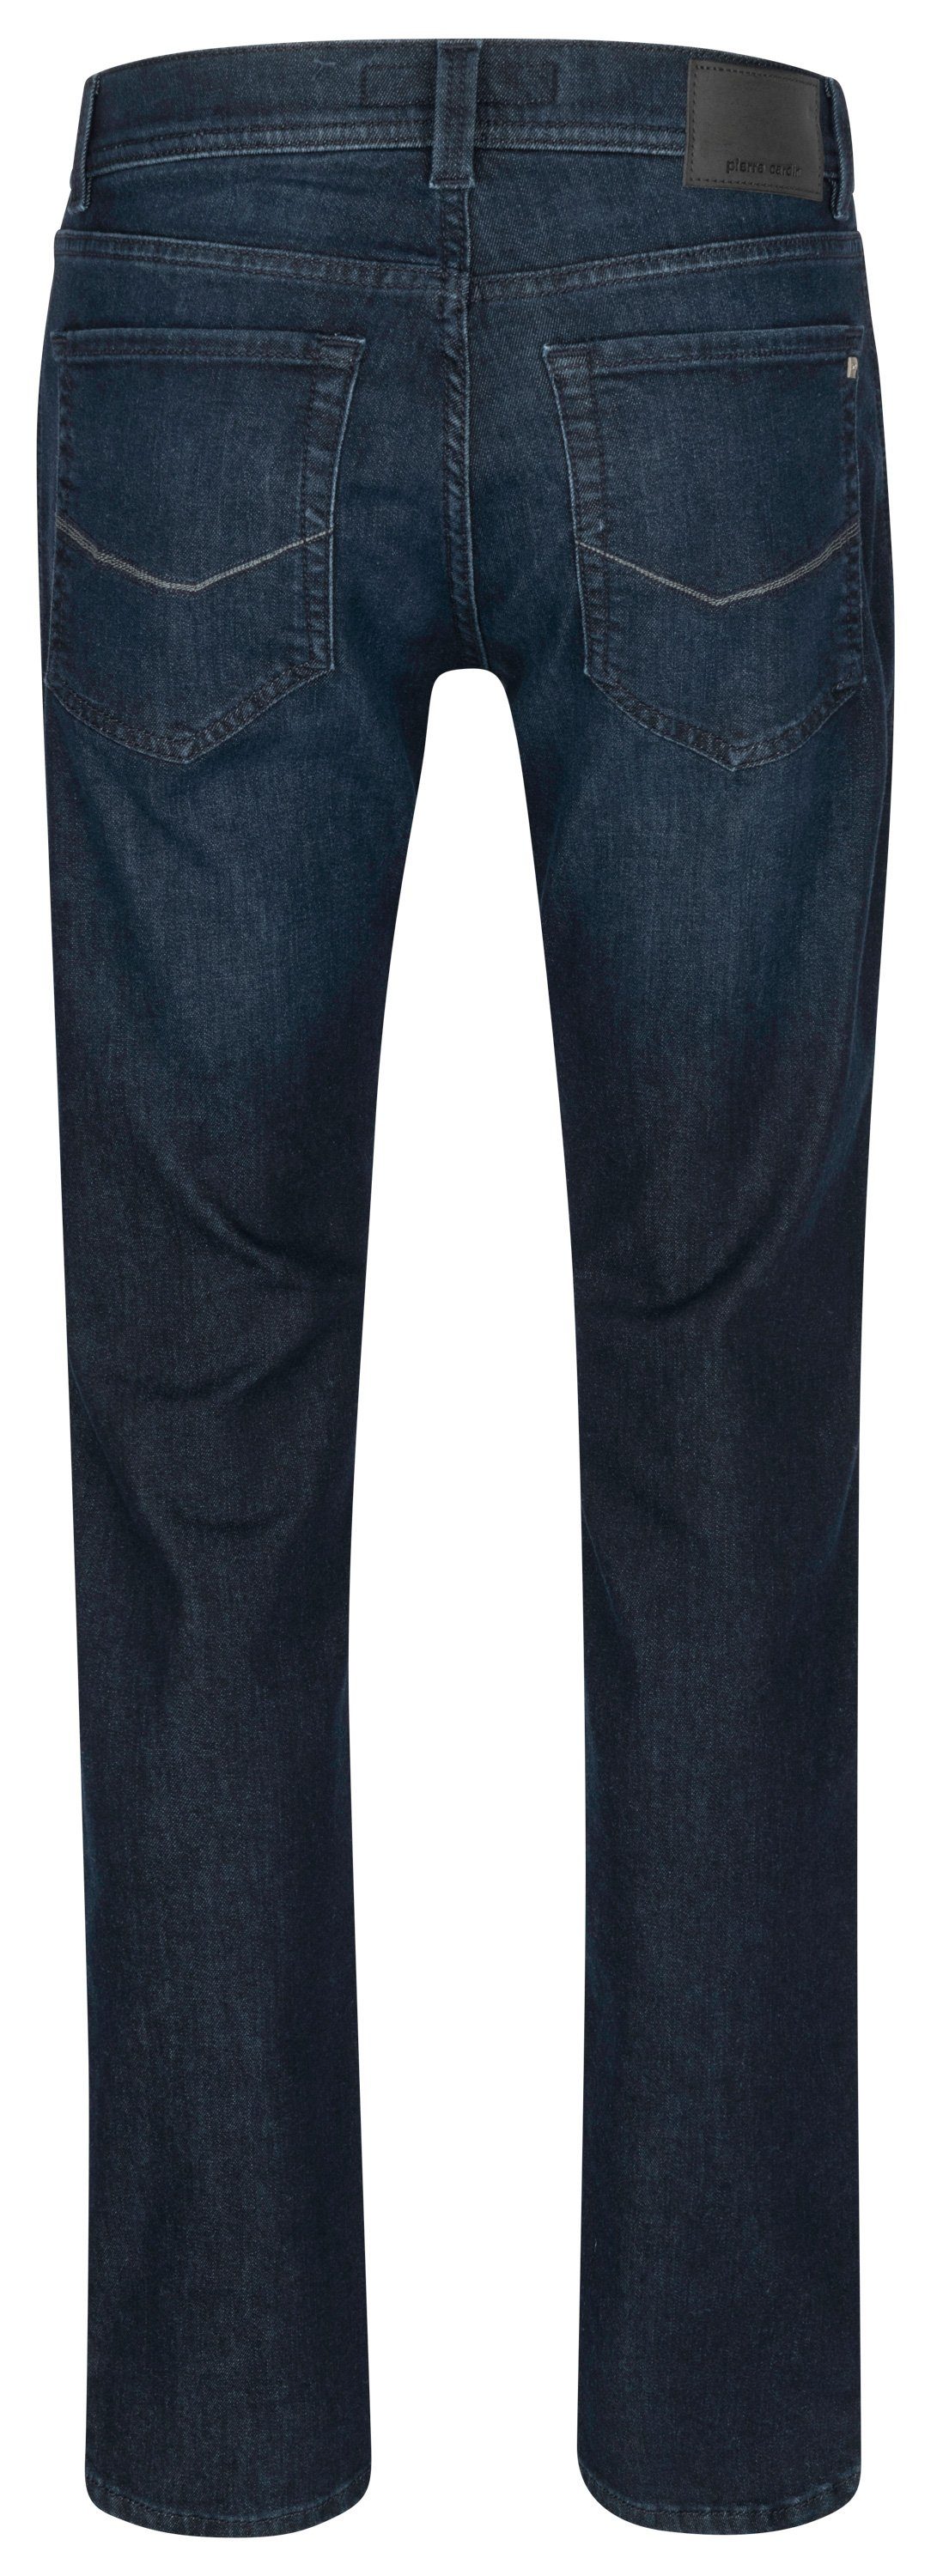 Pierre TAPERED PIERRE Cardin dark 5-Pocket-Jeans - used CARDIN LYON blue 38510 buffies 8105.6814